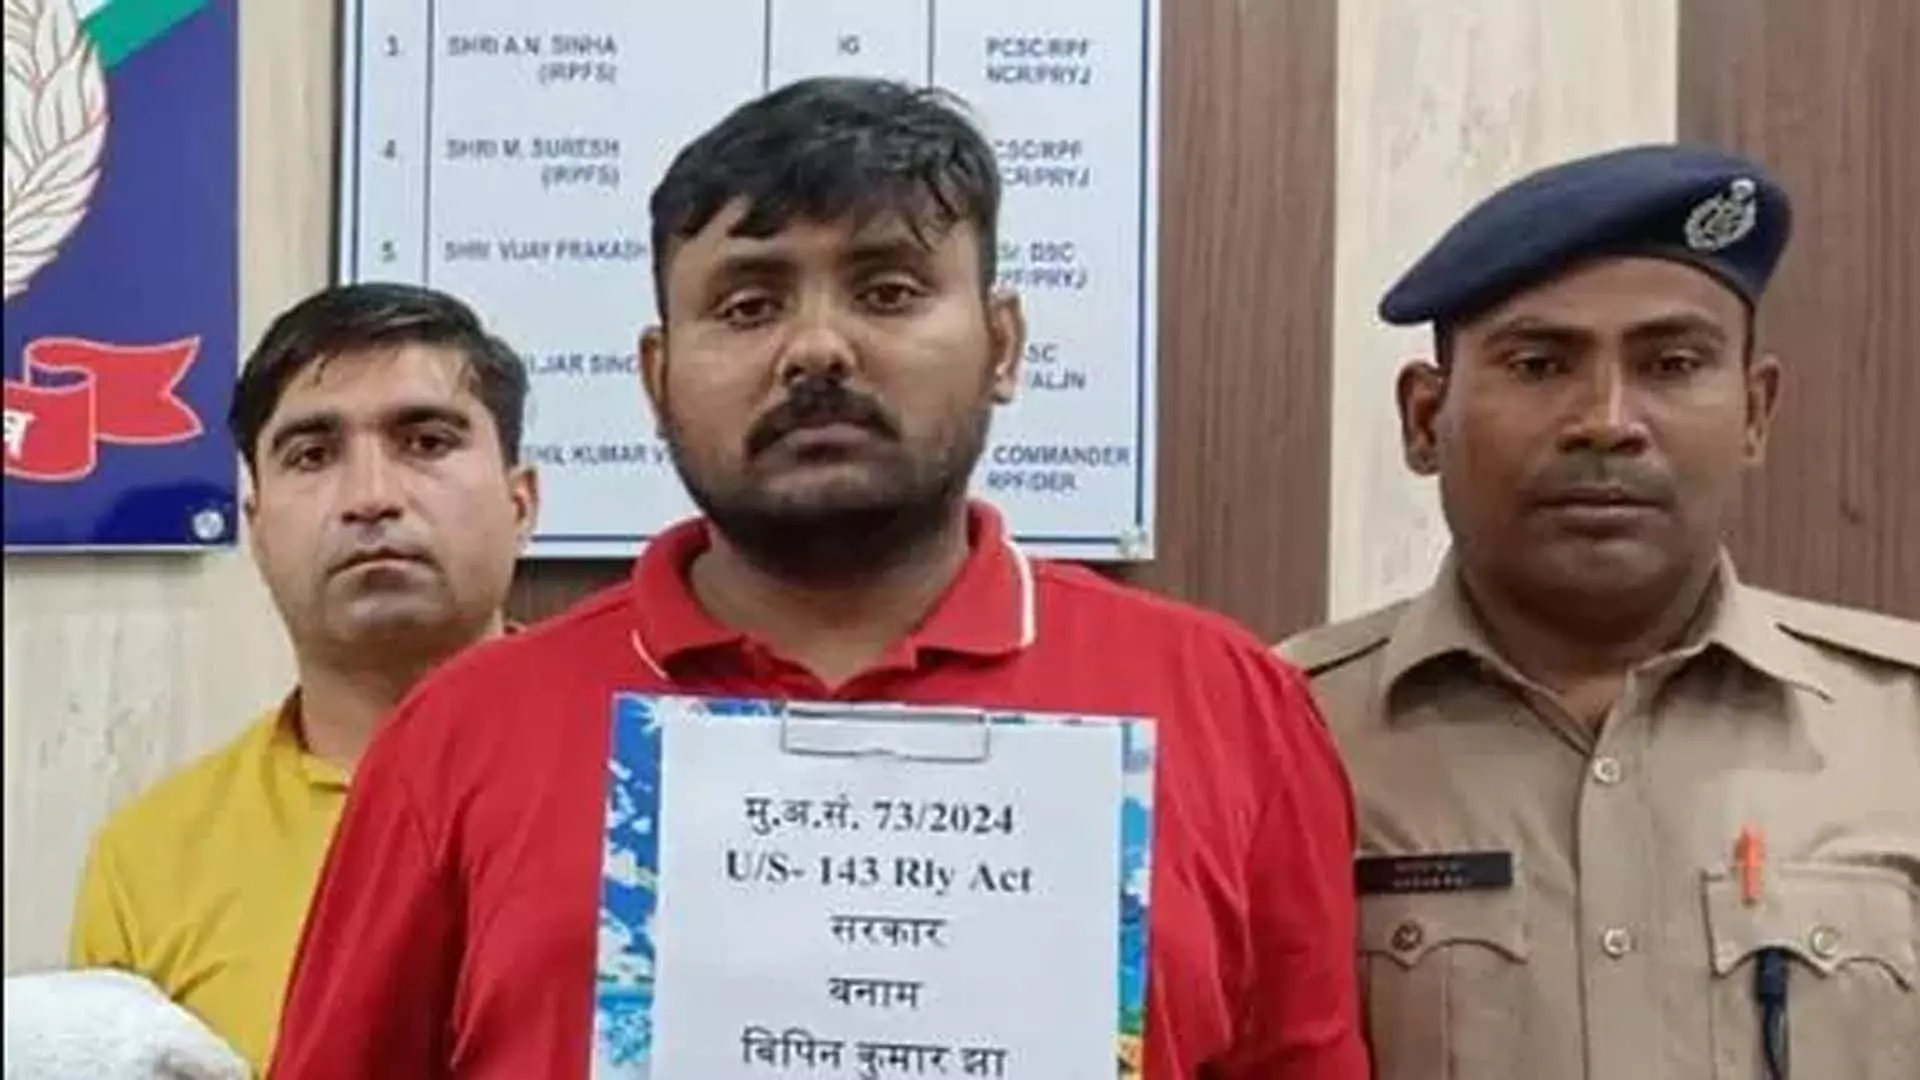 रेलवे ई-टिकटों की कालाबाजारी करने के आरोप में बीटेक स्नातक गिरफ्तार